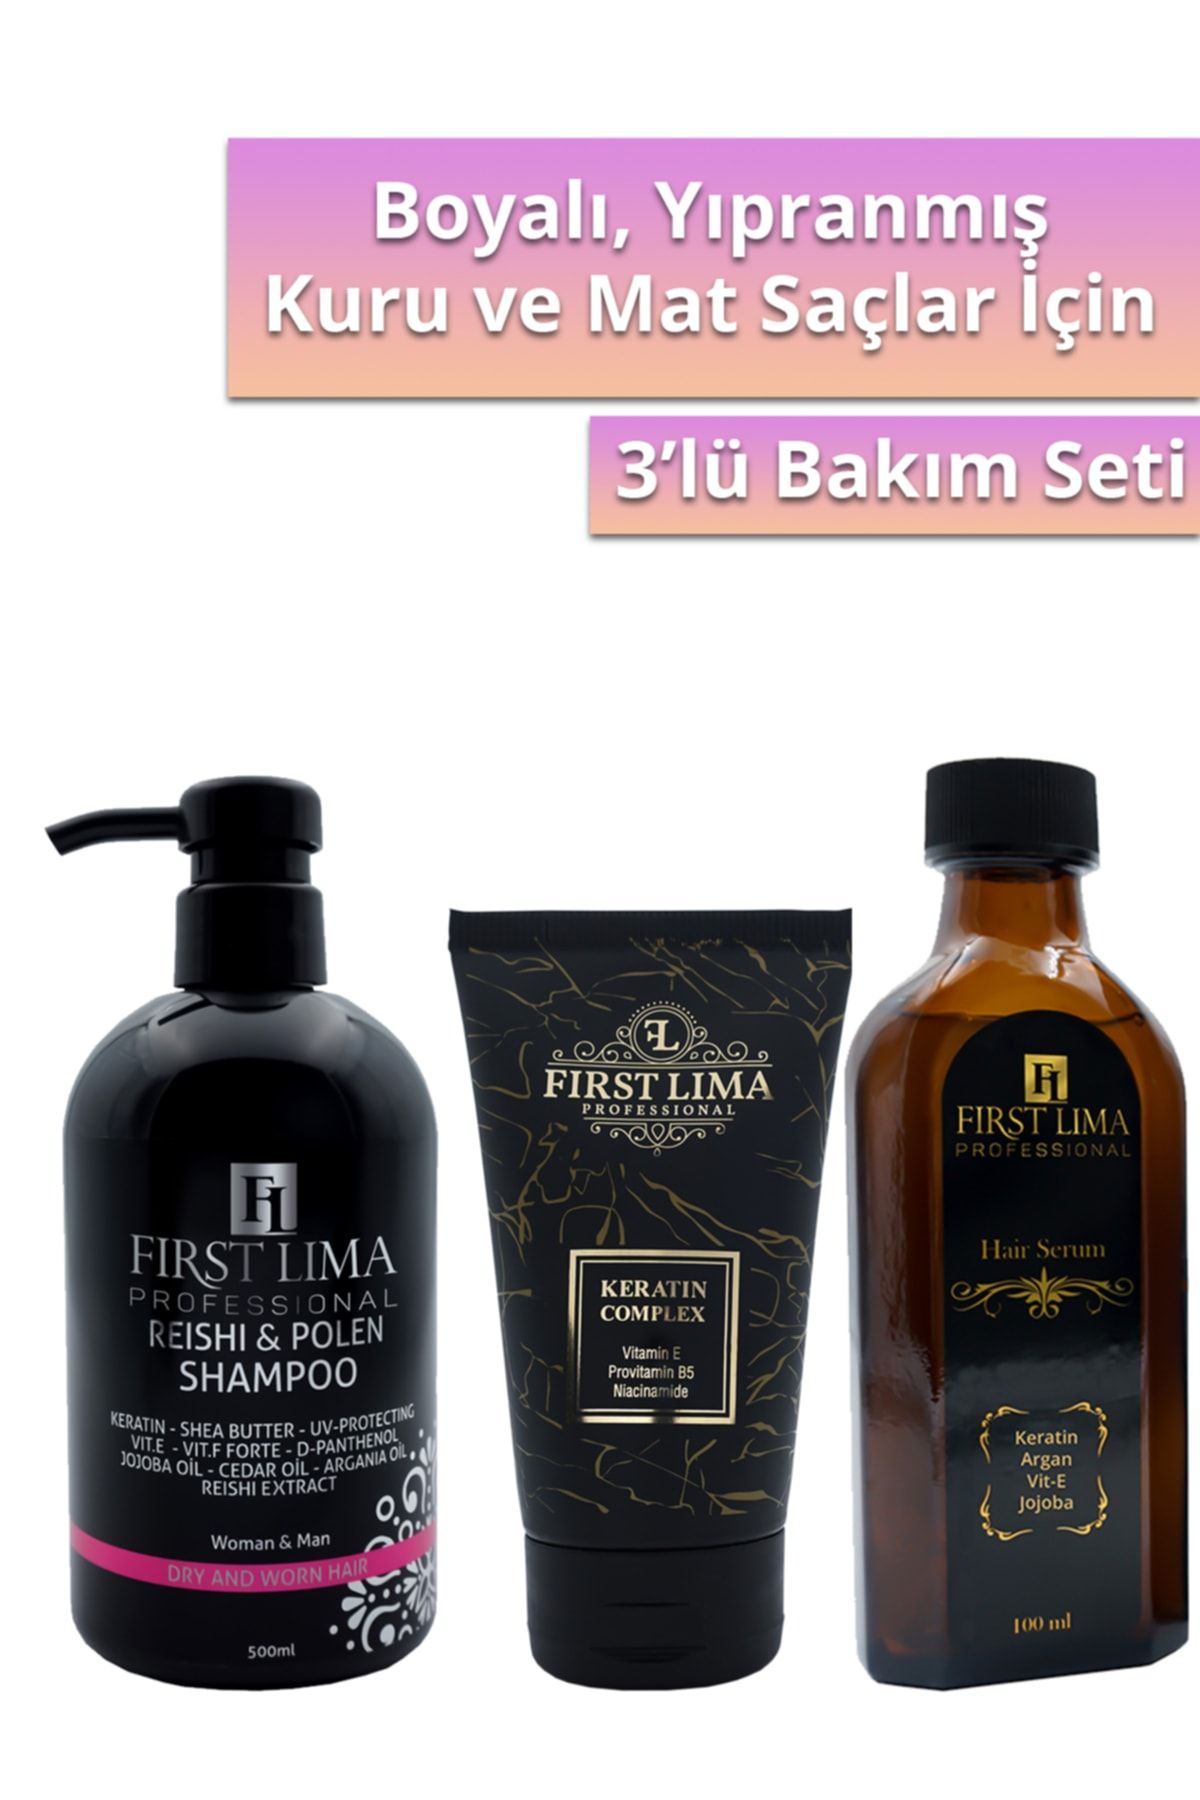 First Lima Professional Yıpranmış Saçlar Için Keratin Bakım Seti: Reishi & Polen Şampuan - Keratin Complex - Hair Serum